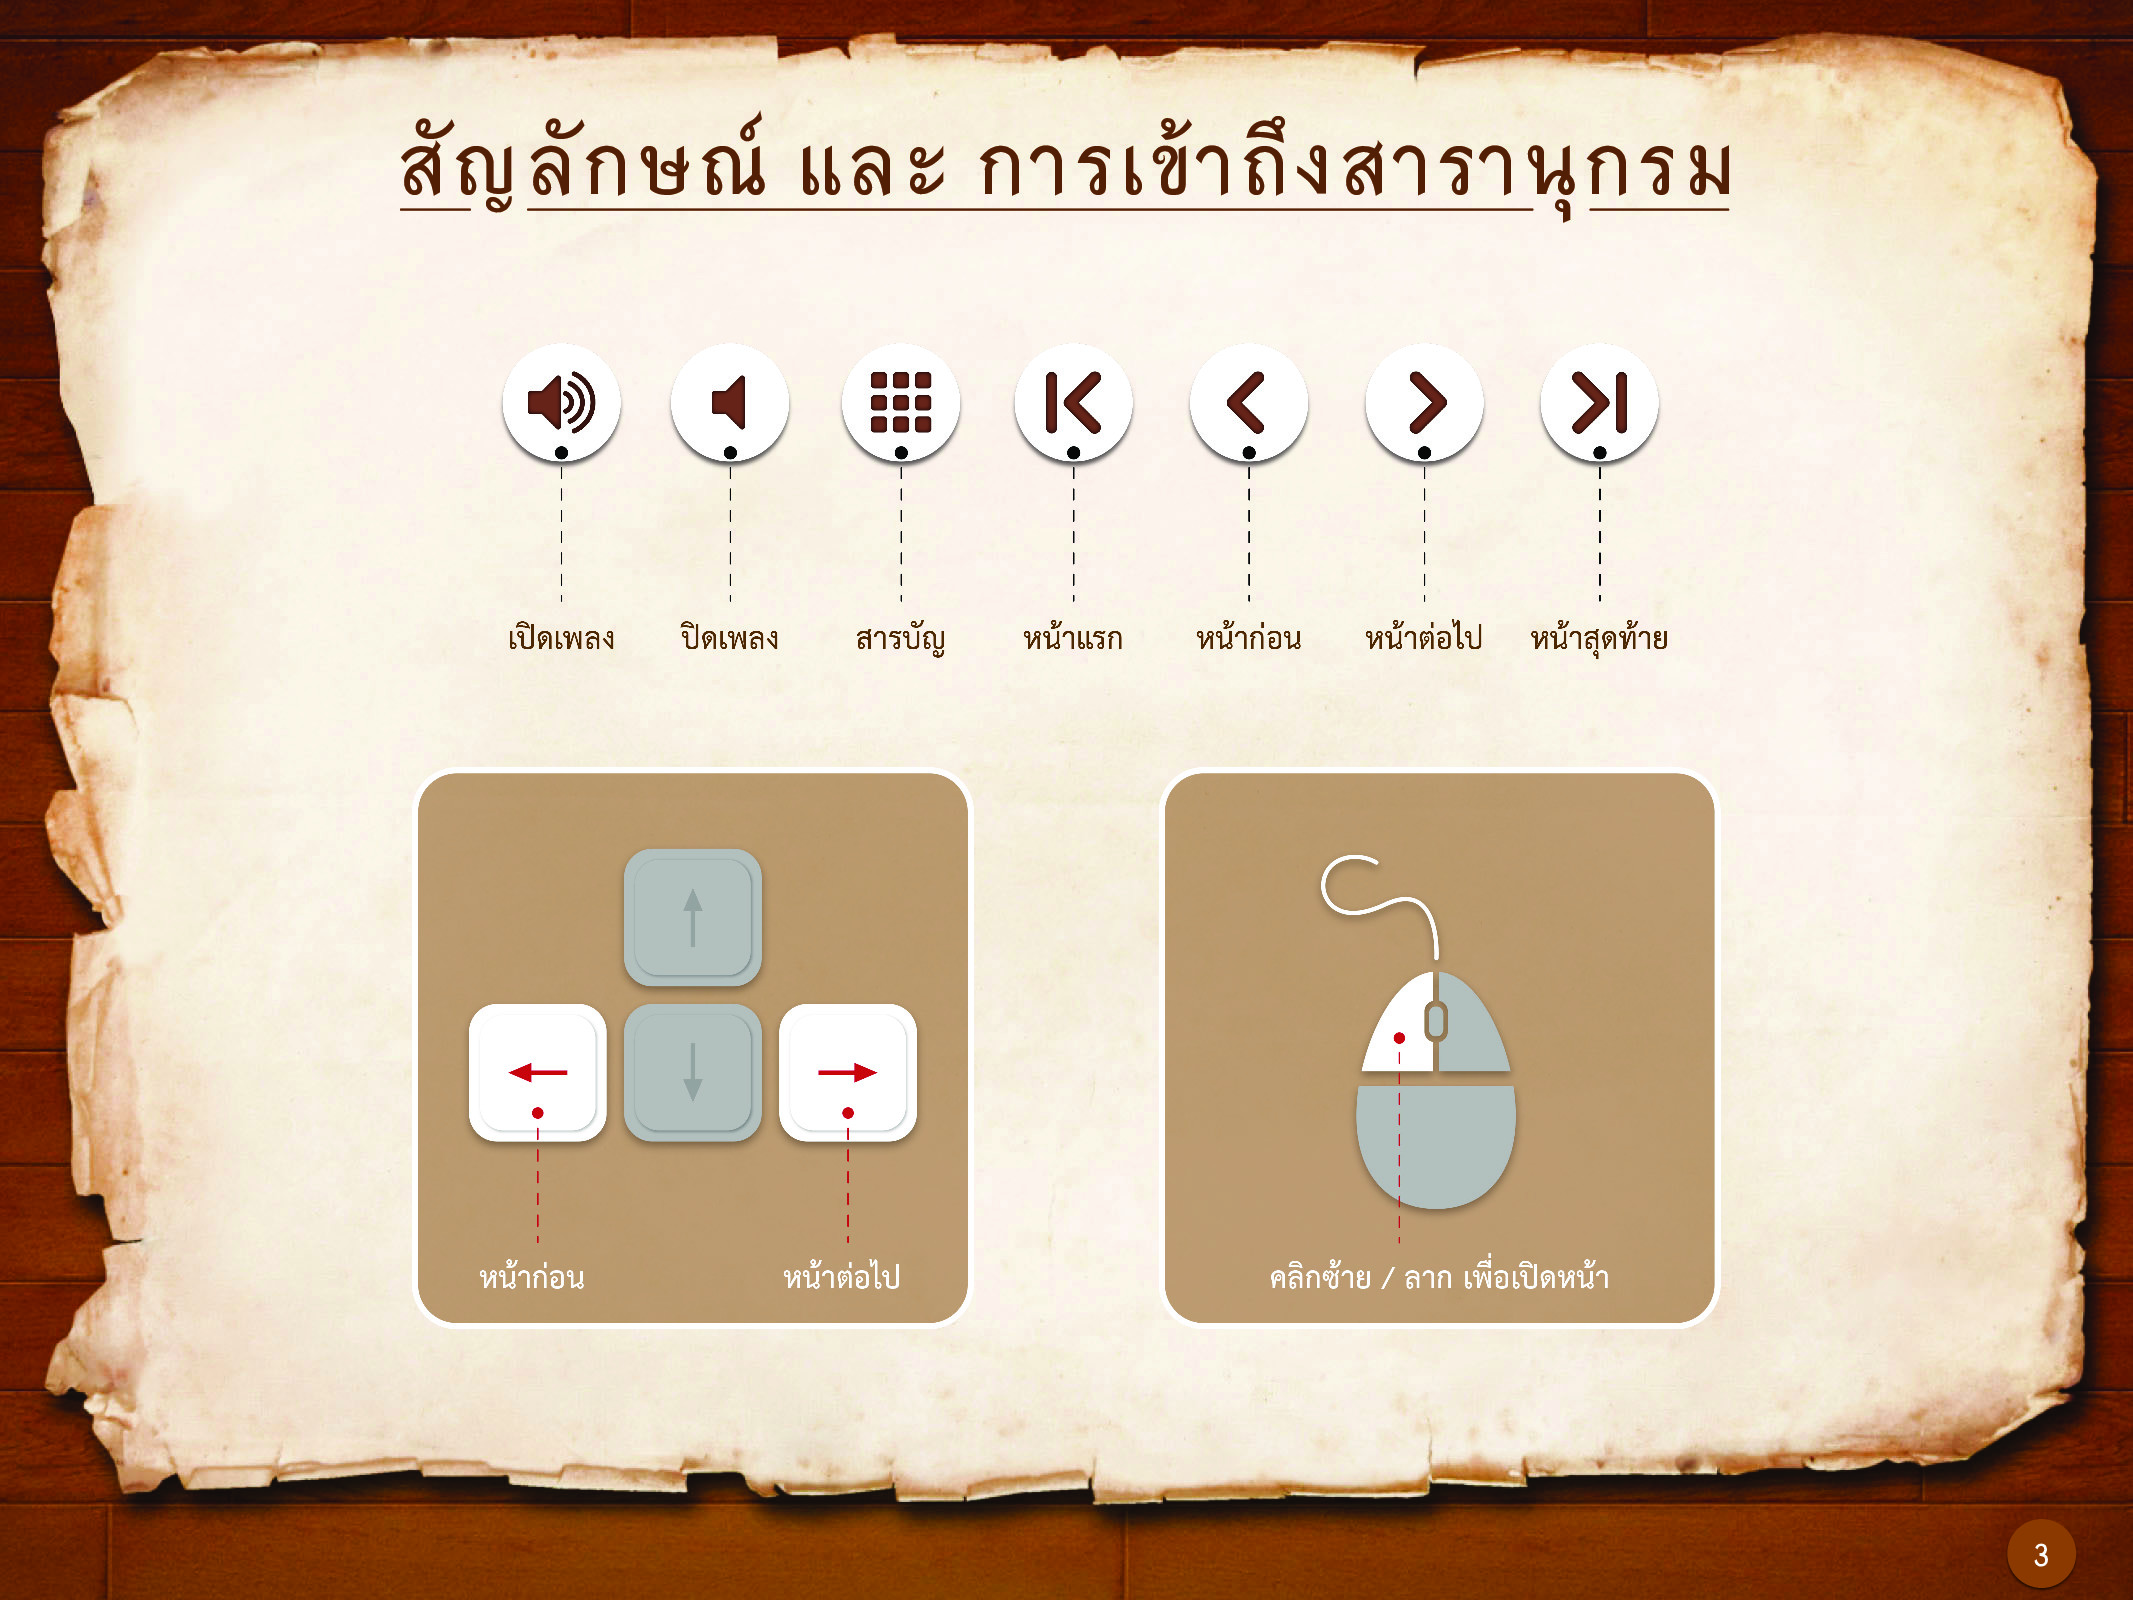 ประวัติศาสตร์กรุงธนบุรี ./images/history_dhonburi/3.jpg